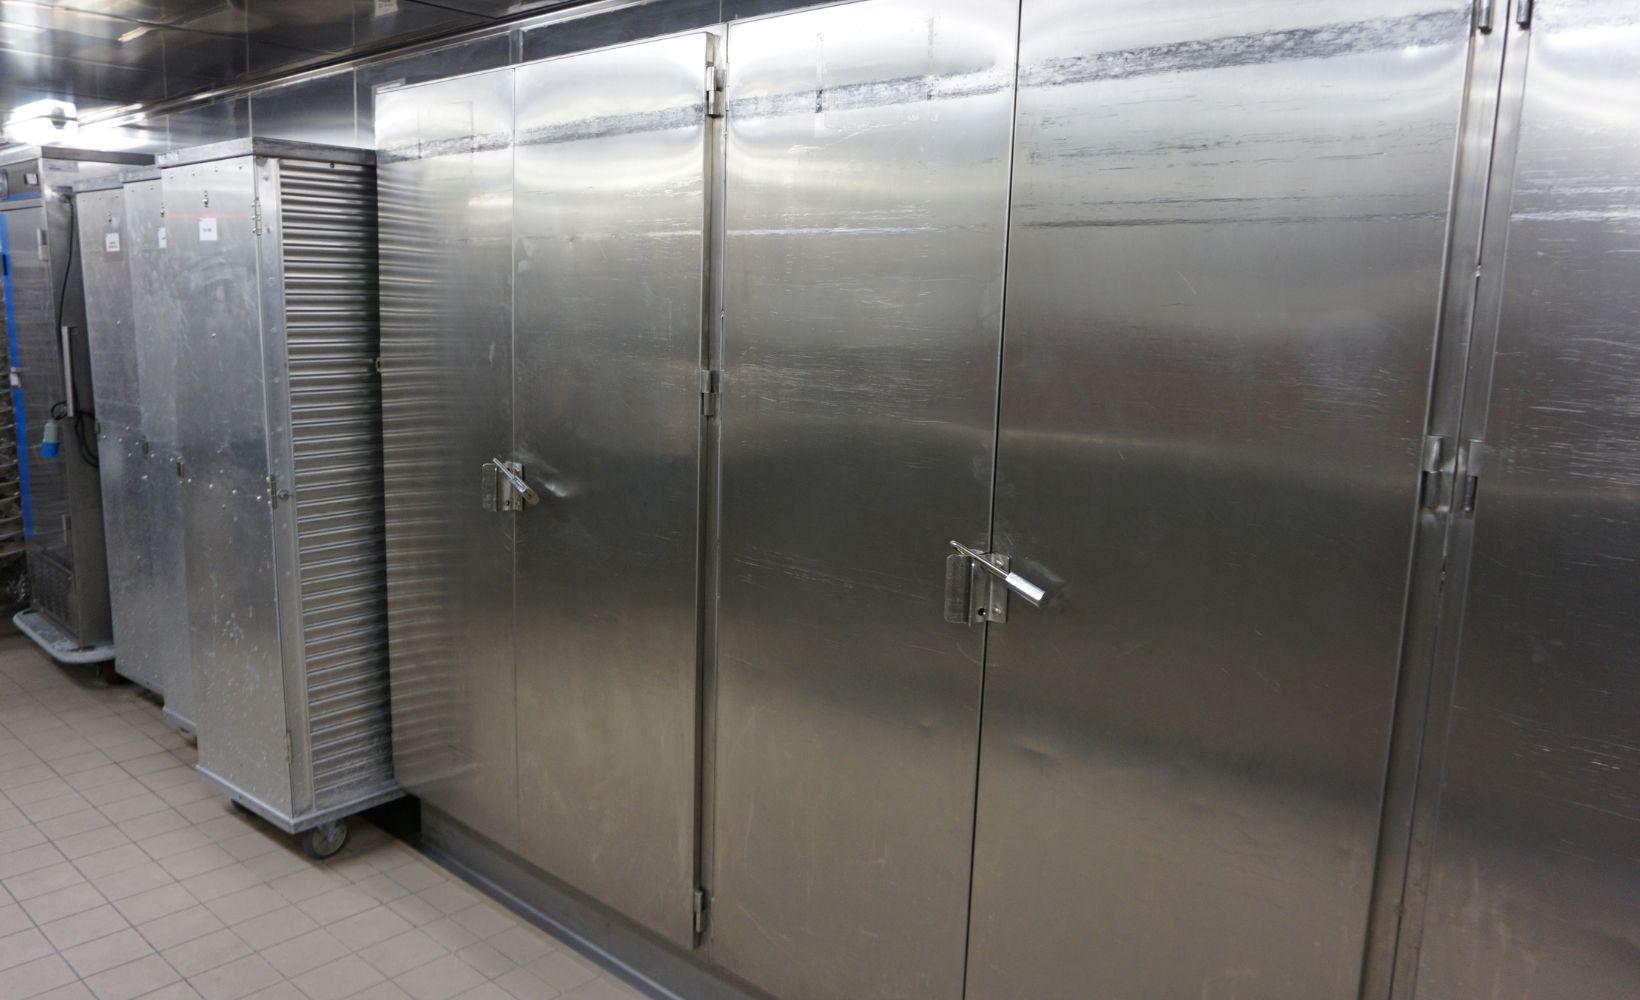 Service frigoriste armoire refrigere expertise et fiabilite avec service24 en belgique